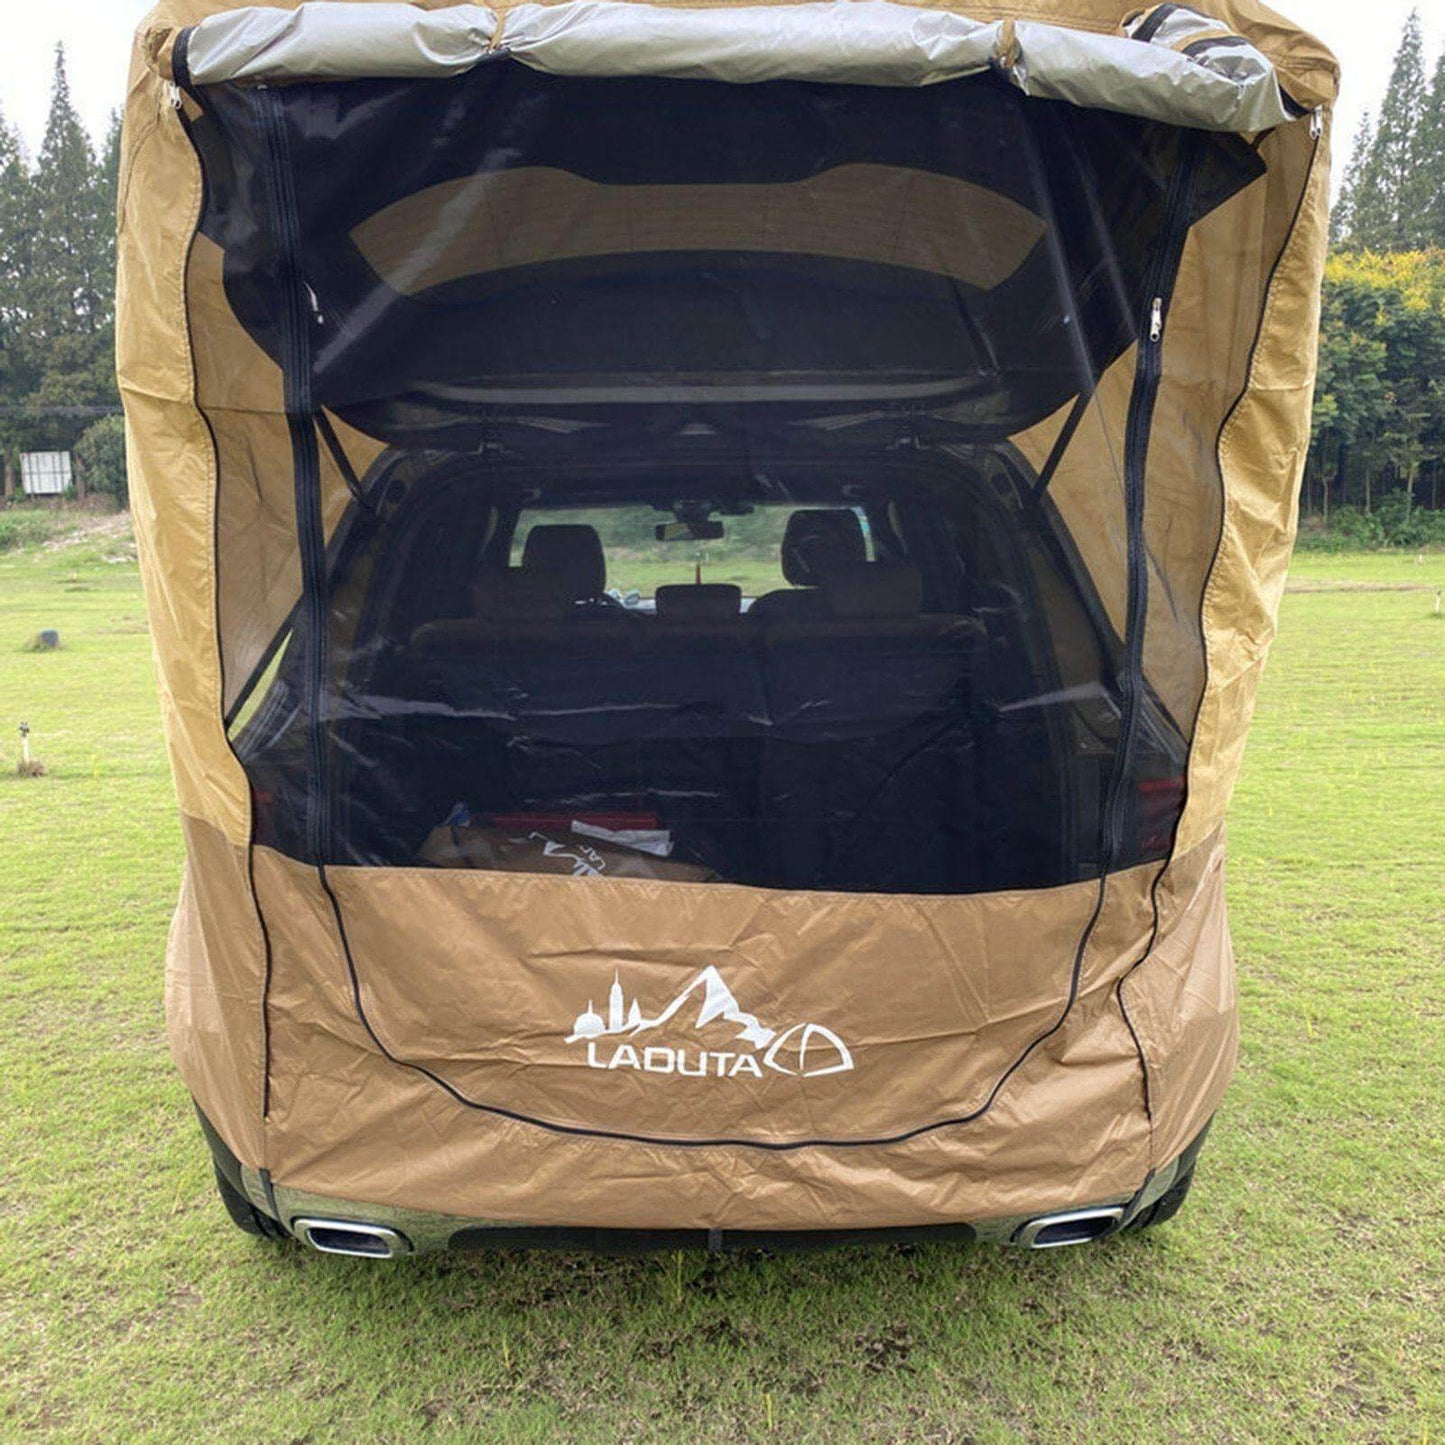 Camping Waterproof Car Sunshade Trunk Tent